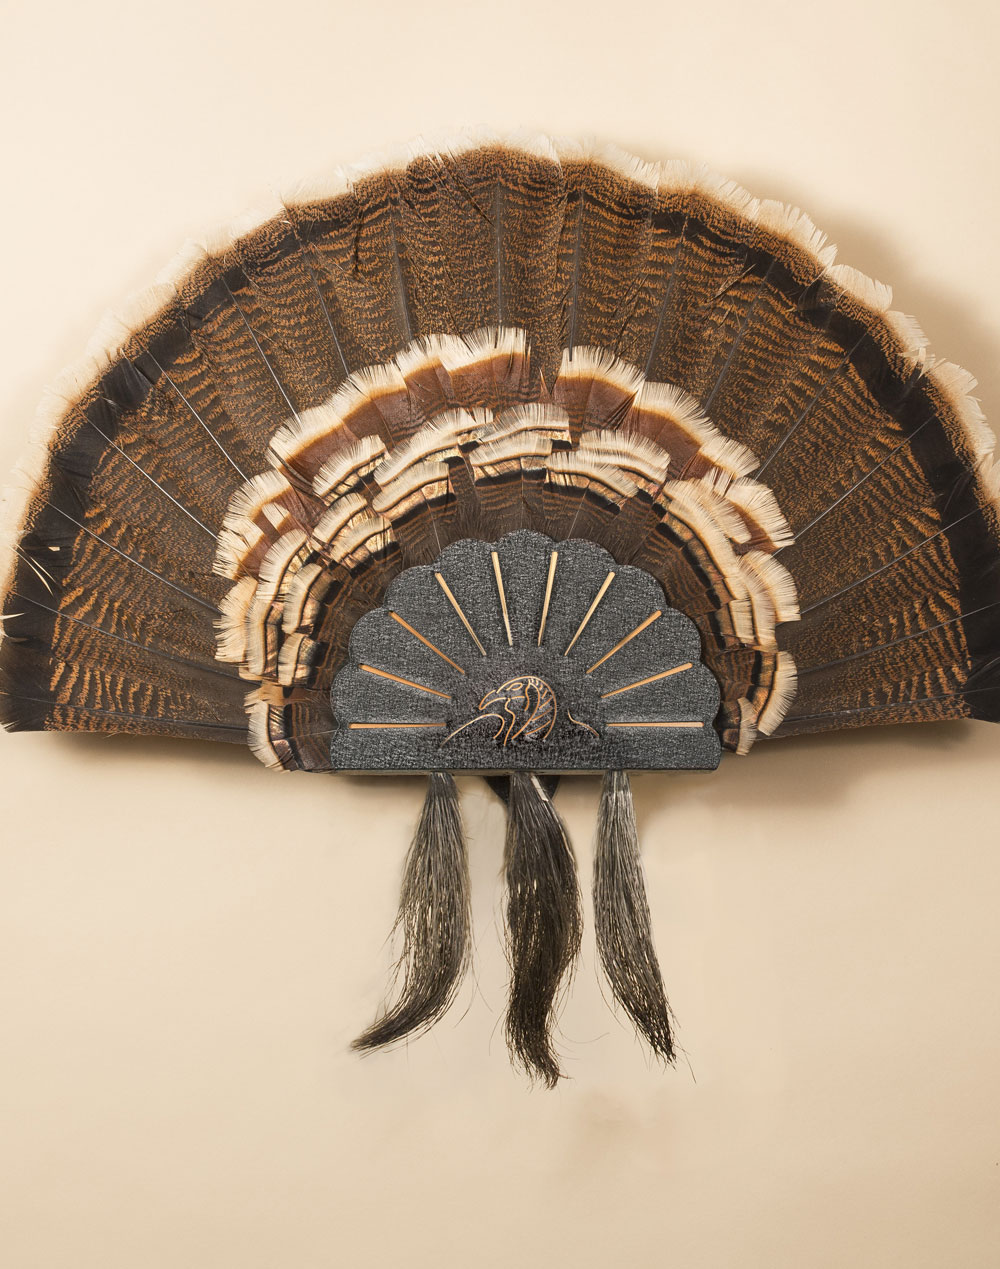 Black Turkey Fan and Beard Mount with Skull Hangers 